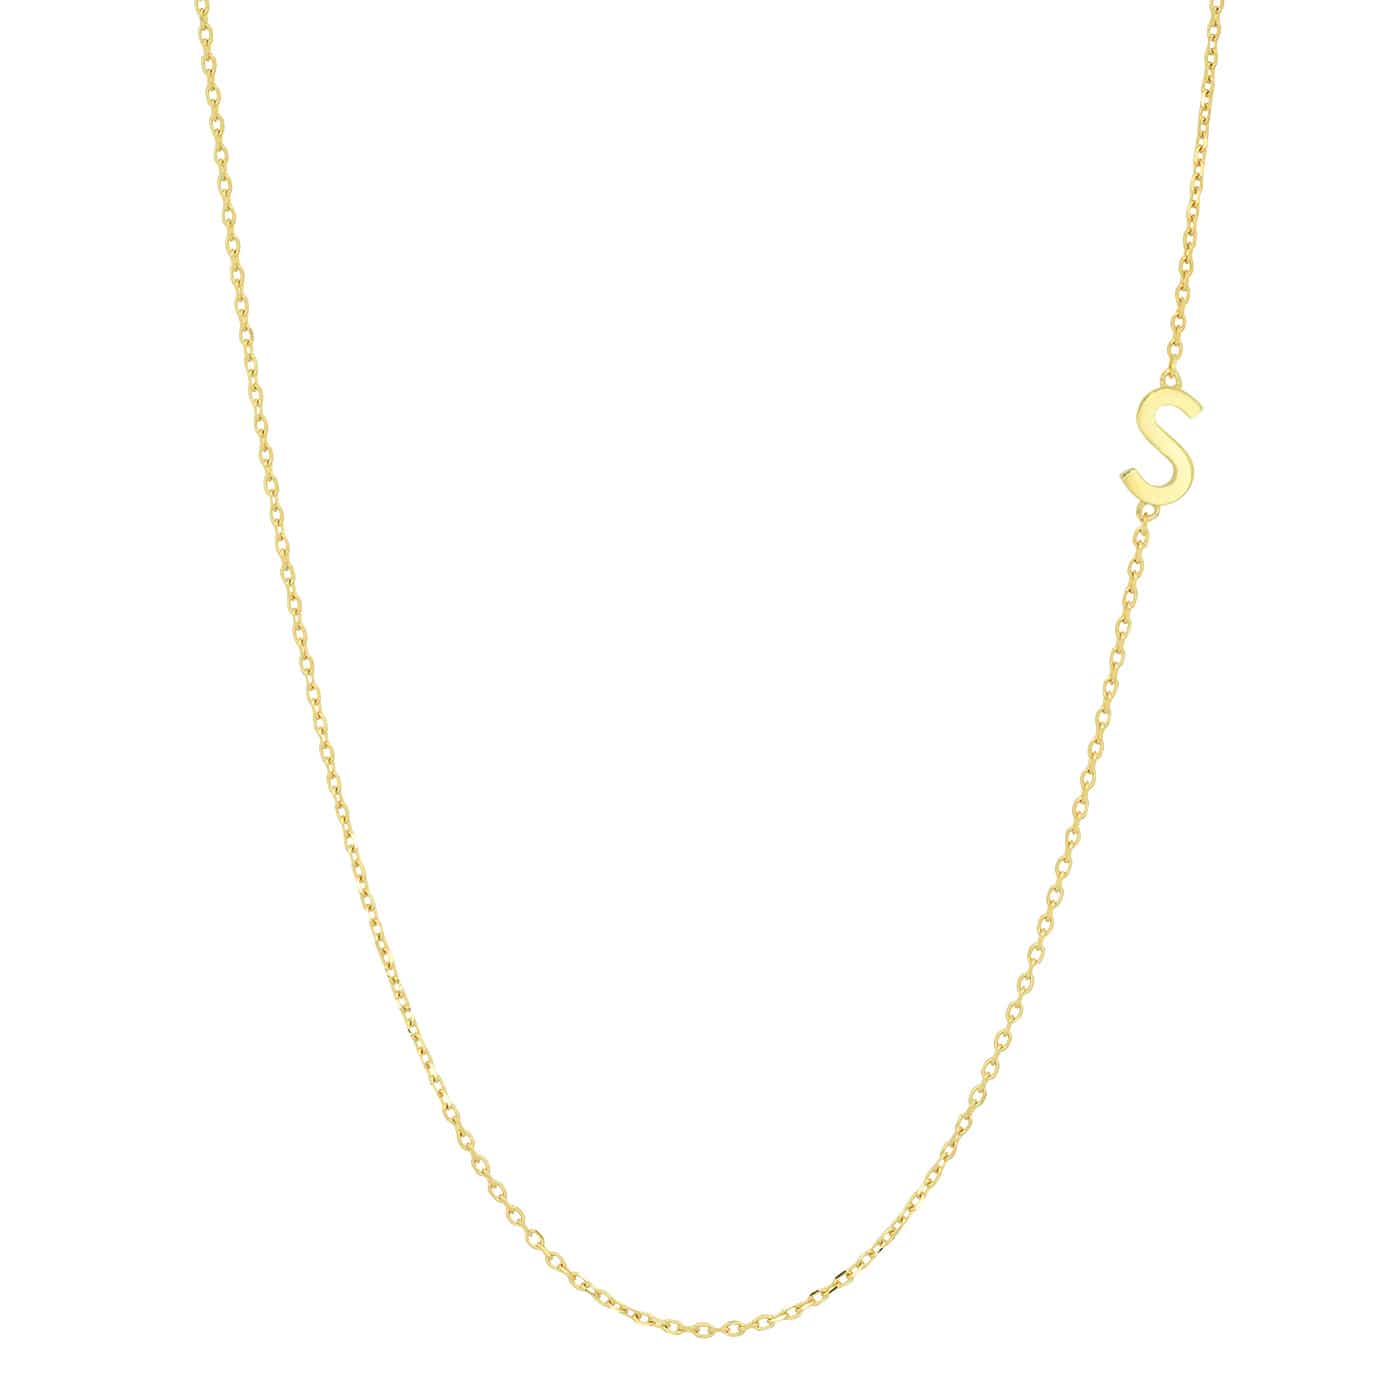 TAI JEWELRY Necklace S 14k Sideways Monogram Necklace